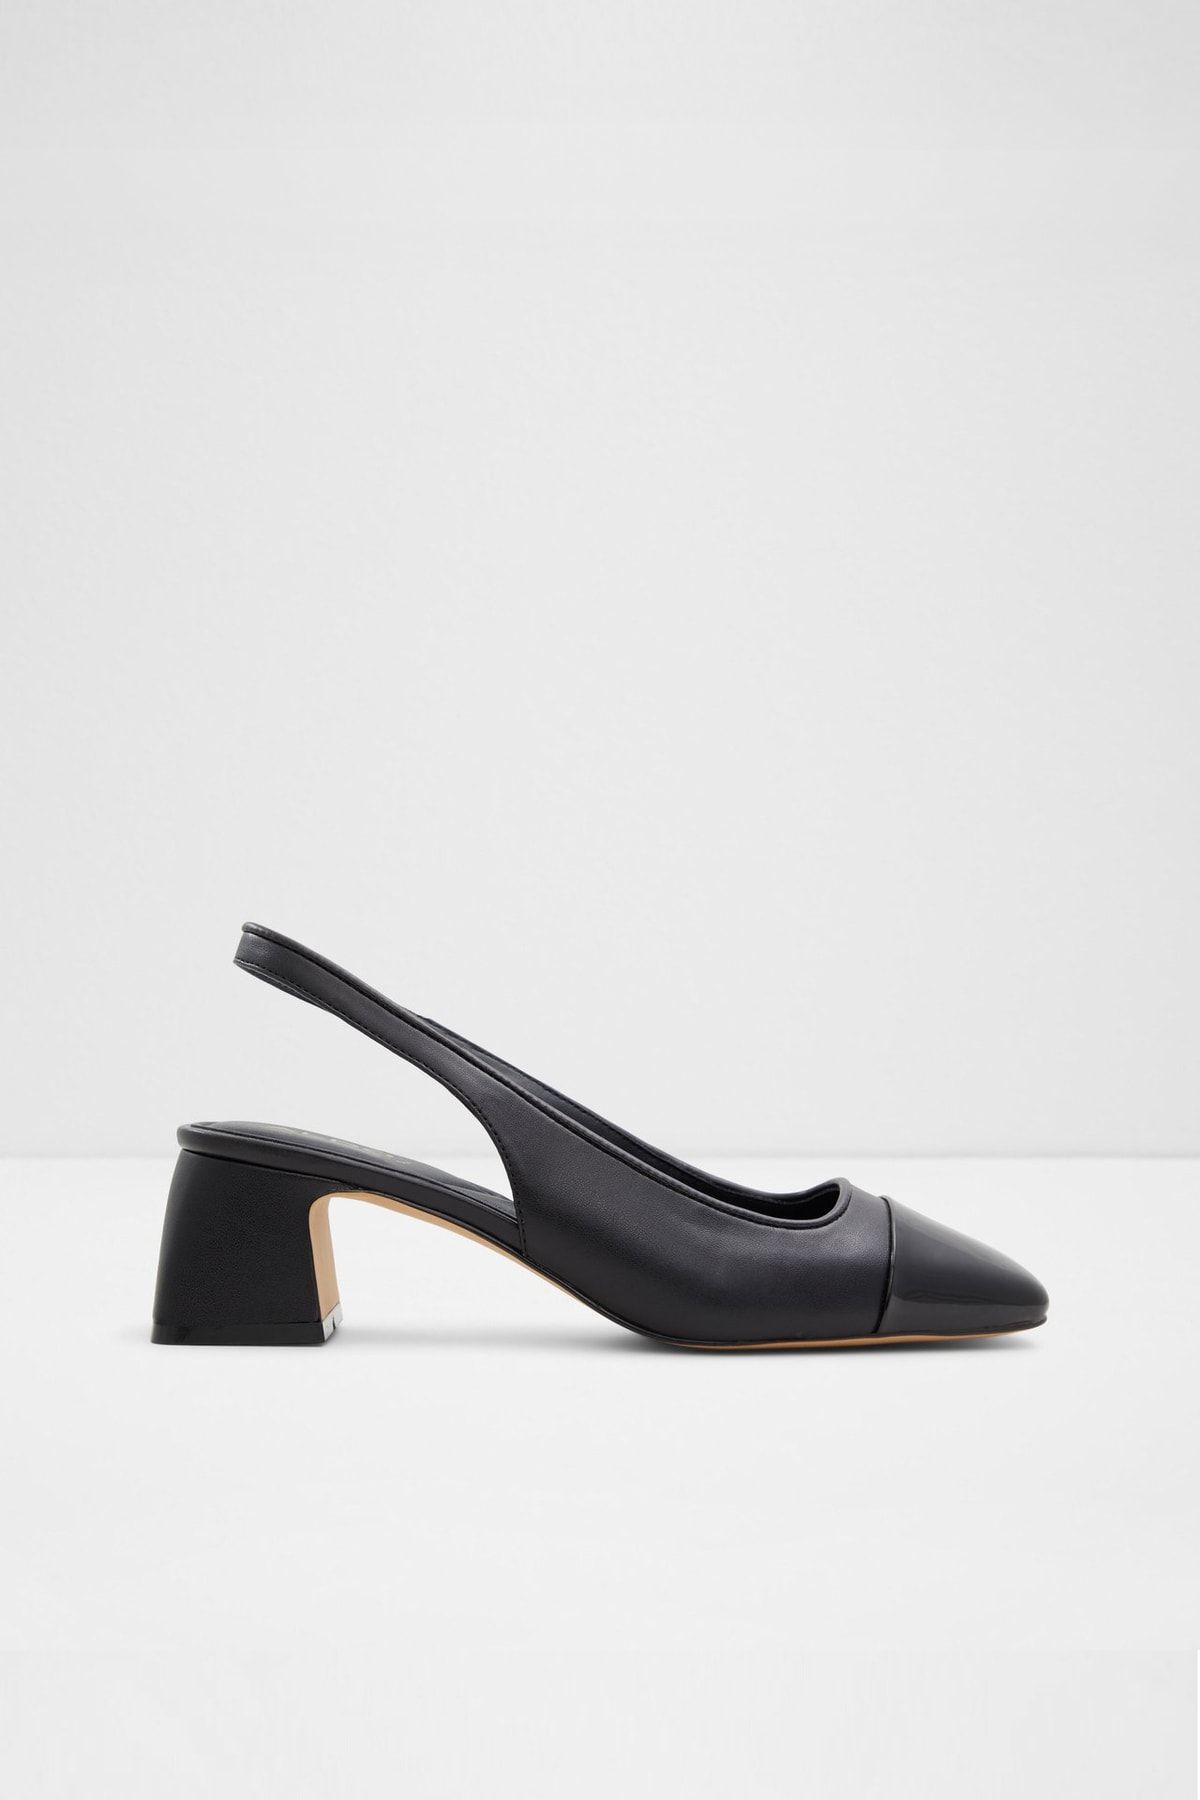 Aldo JILL - Siyah Kadın Topuklu Ayakkabı